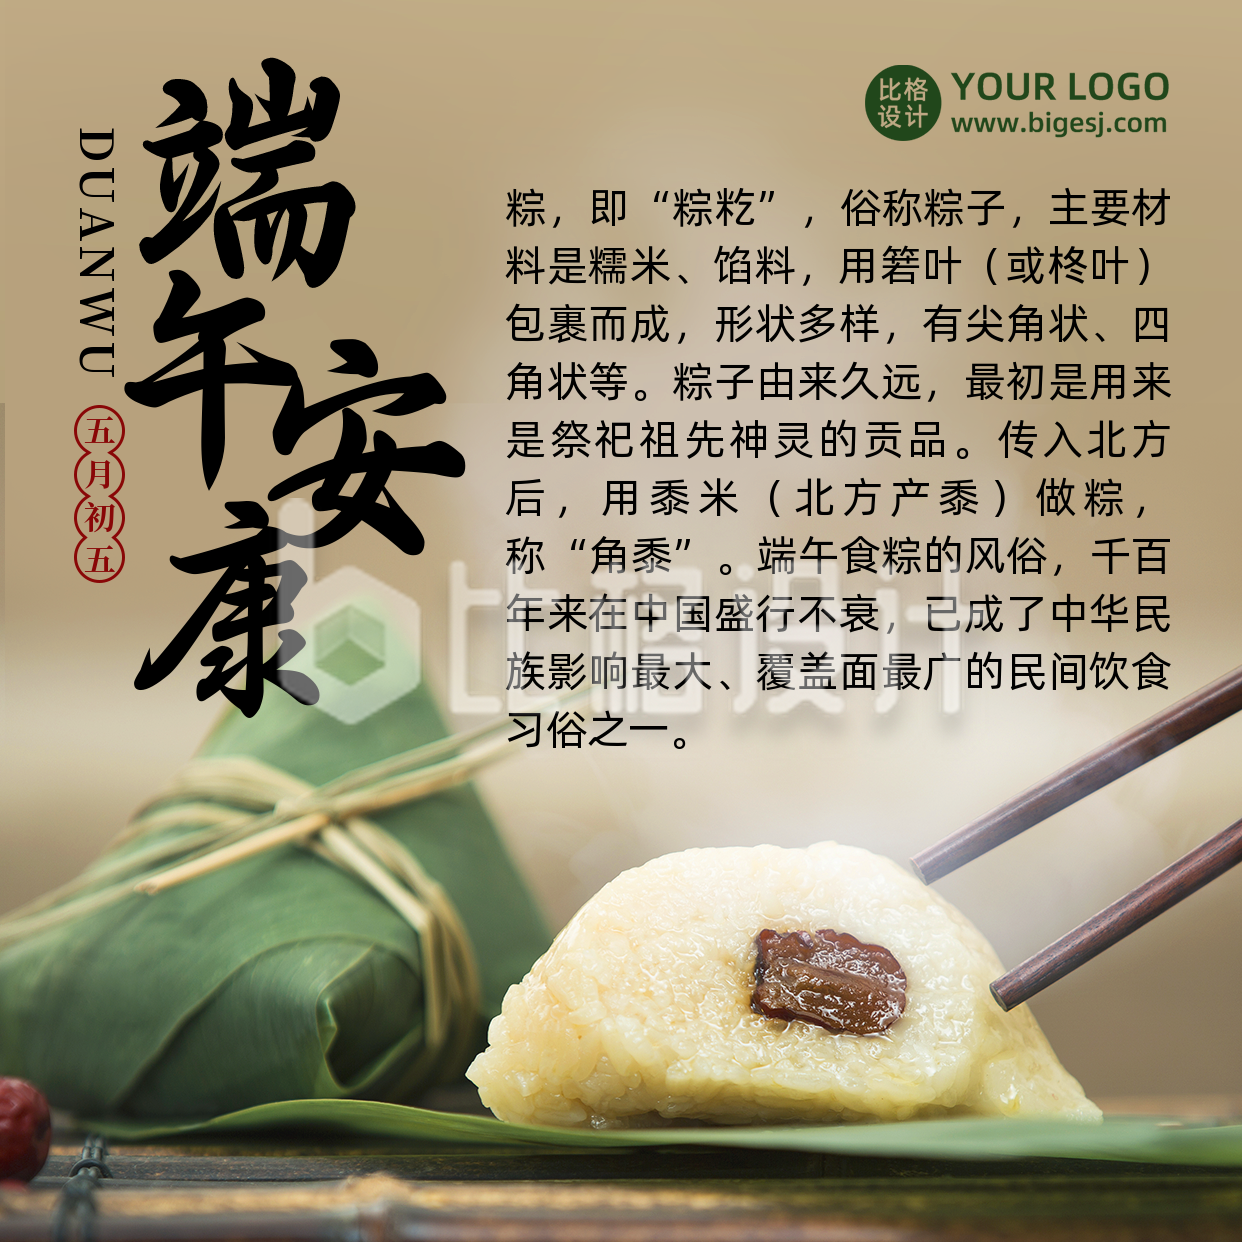 端午节习俗吃粽子传统中国风实景方形海报